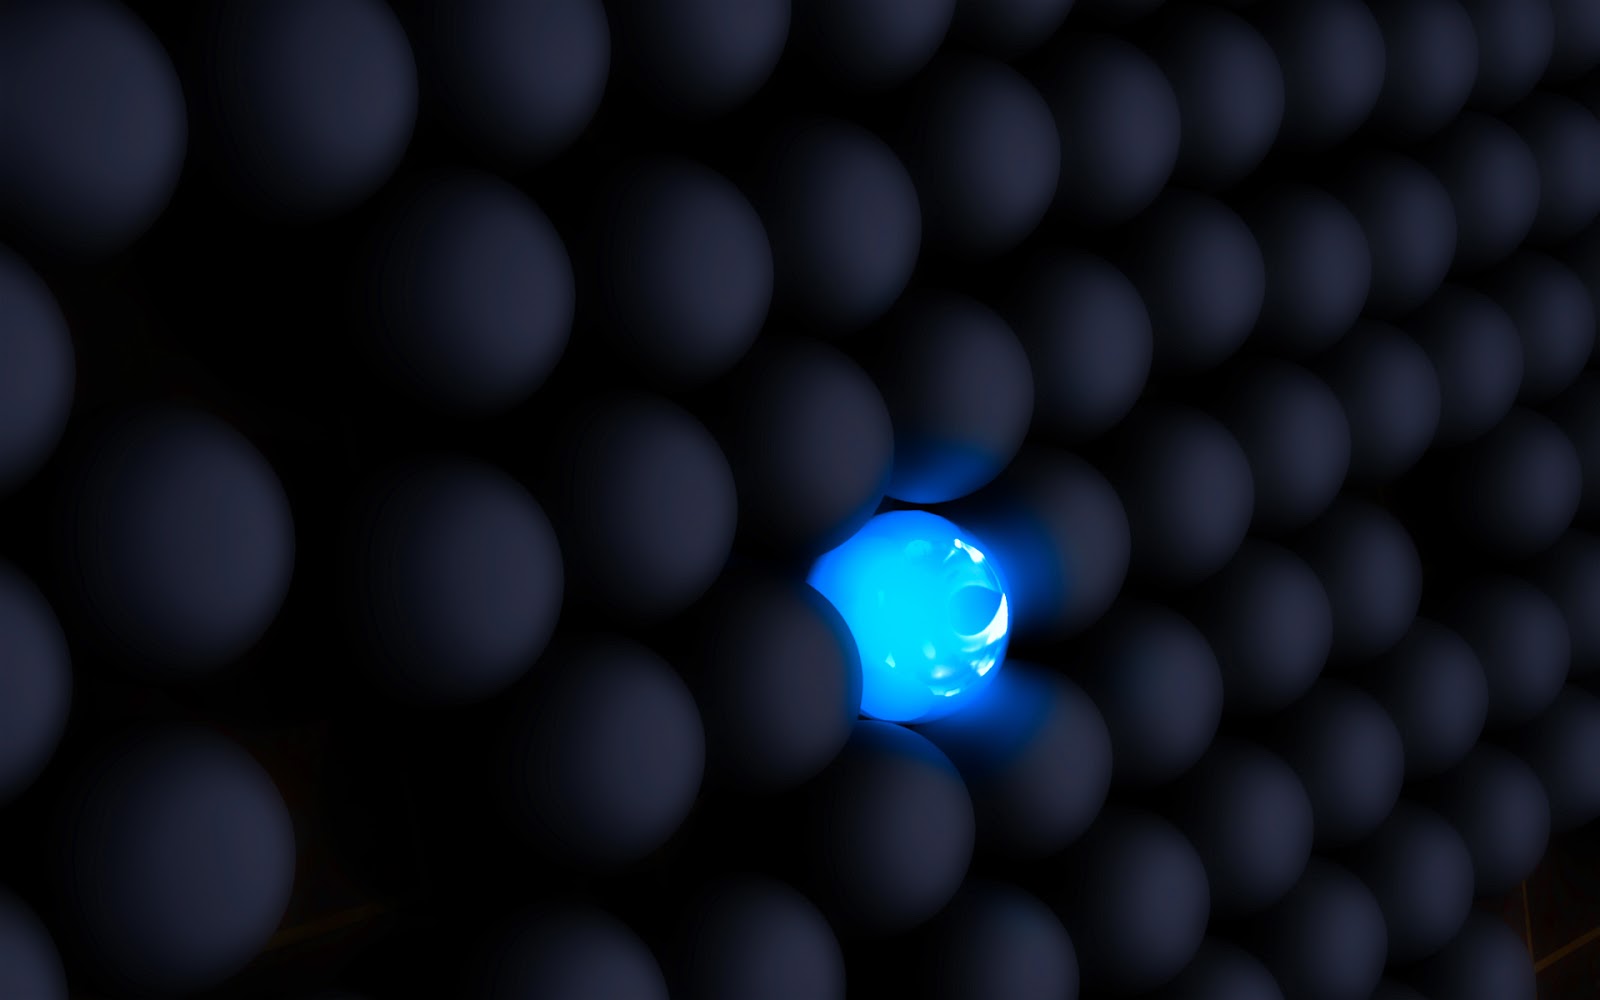 https://1.bp.blogspot.com/_Gq1jO6iuU2U/TSfYEtljBwI/AAAAAAAAHVg/n6qzqjVIRWc/s1600/3d+blue+ball+vs+black+balls+hd+wallpaper.jpg